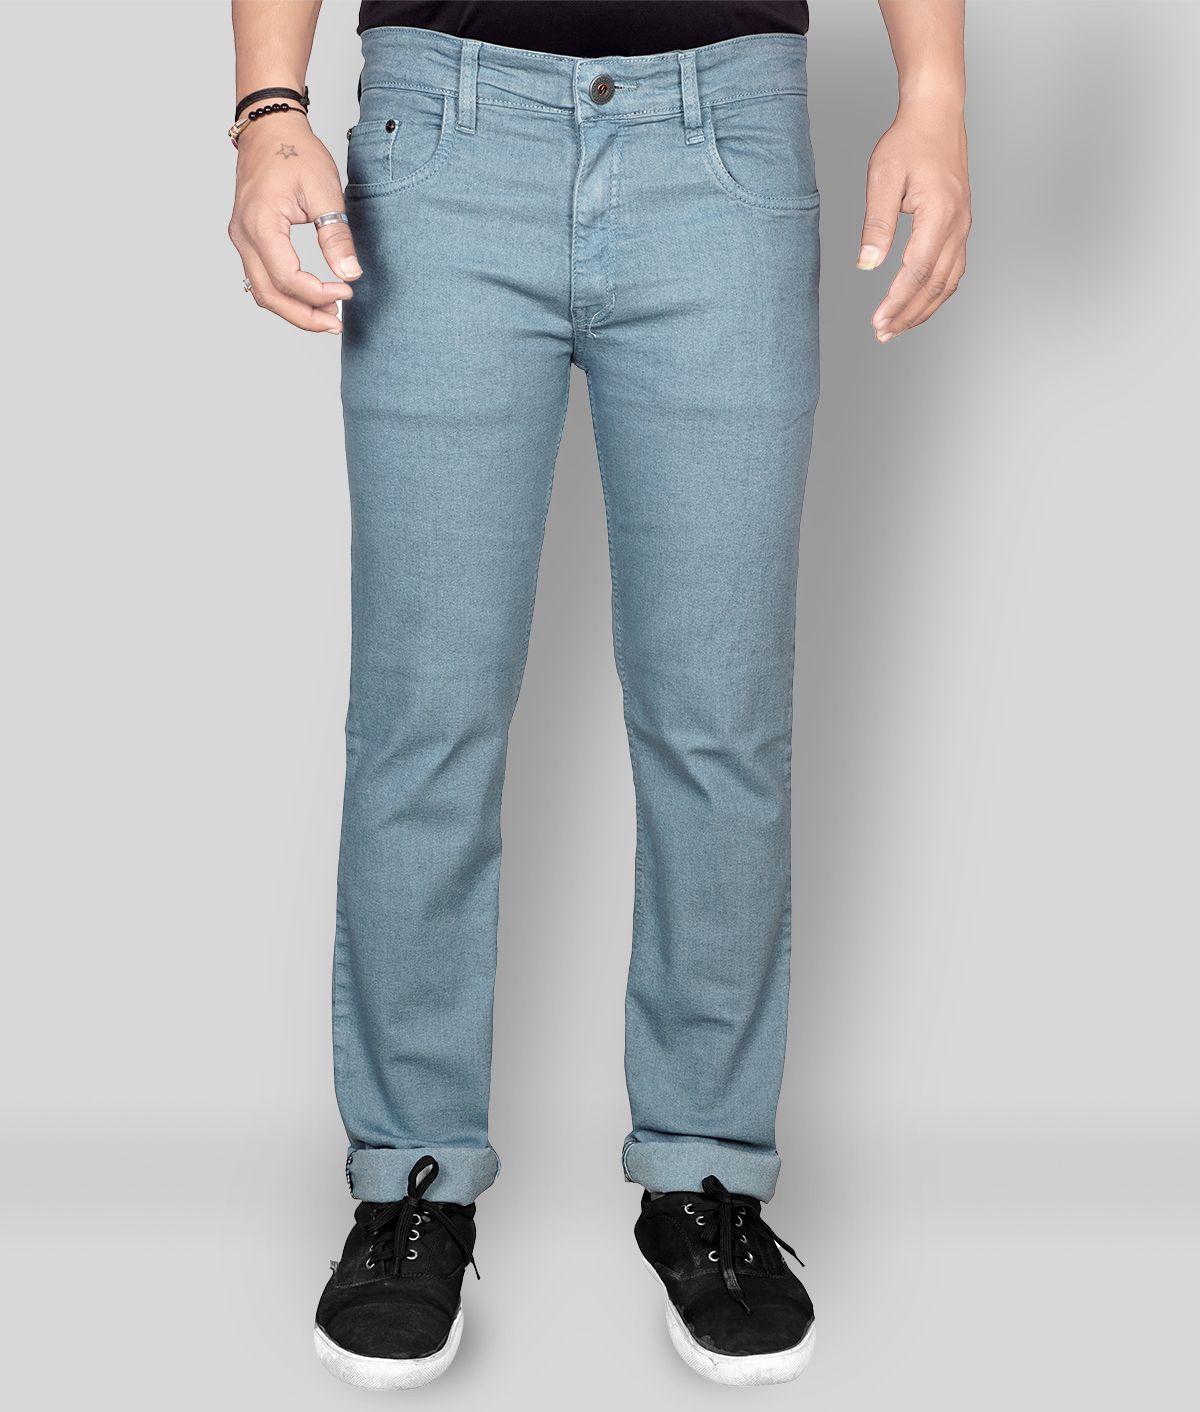 JB JUST BLACK - Grey Cotton Blend Regular Fit Men's Jeans ( Pack of 1 )